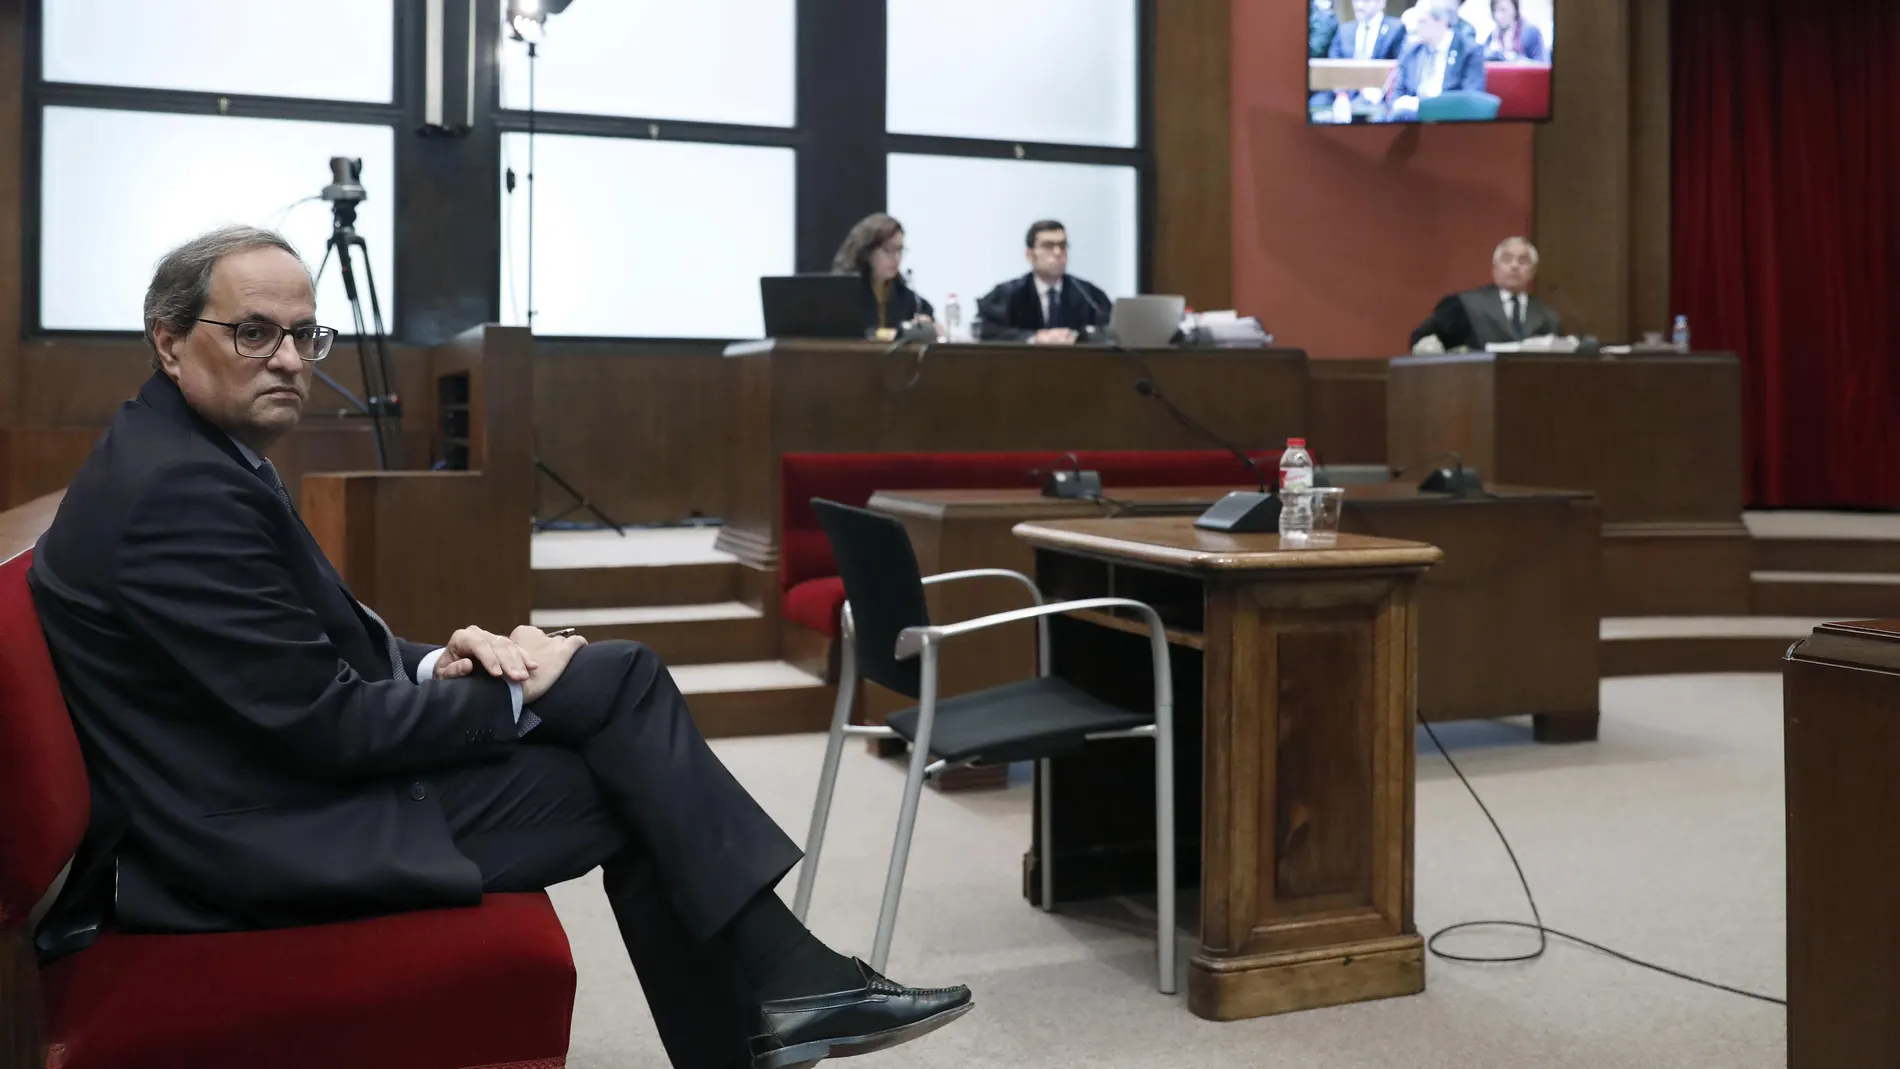 El presidente de la Generalitat, Quim Torra, en el Tribunal Superior de Justicia de Cataluña donde este lunes se le juzga por desobedecer la orden de la Junta Electoral de retirar los lazos de los edificios públicos en la campaña del 28A, un caso que puede costarle hasta dos años de inhabilitación. EFE/Andreu Dalmau POOL